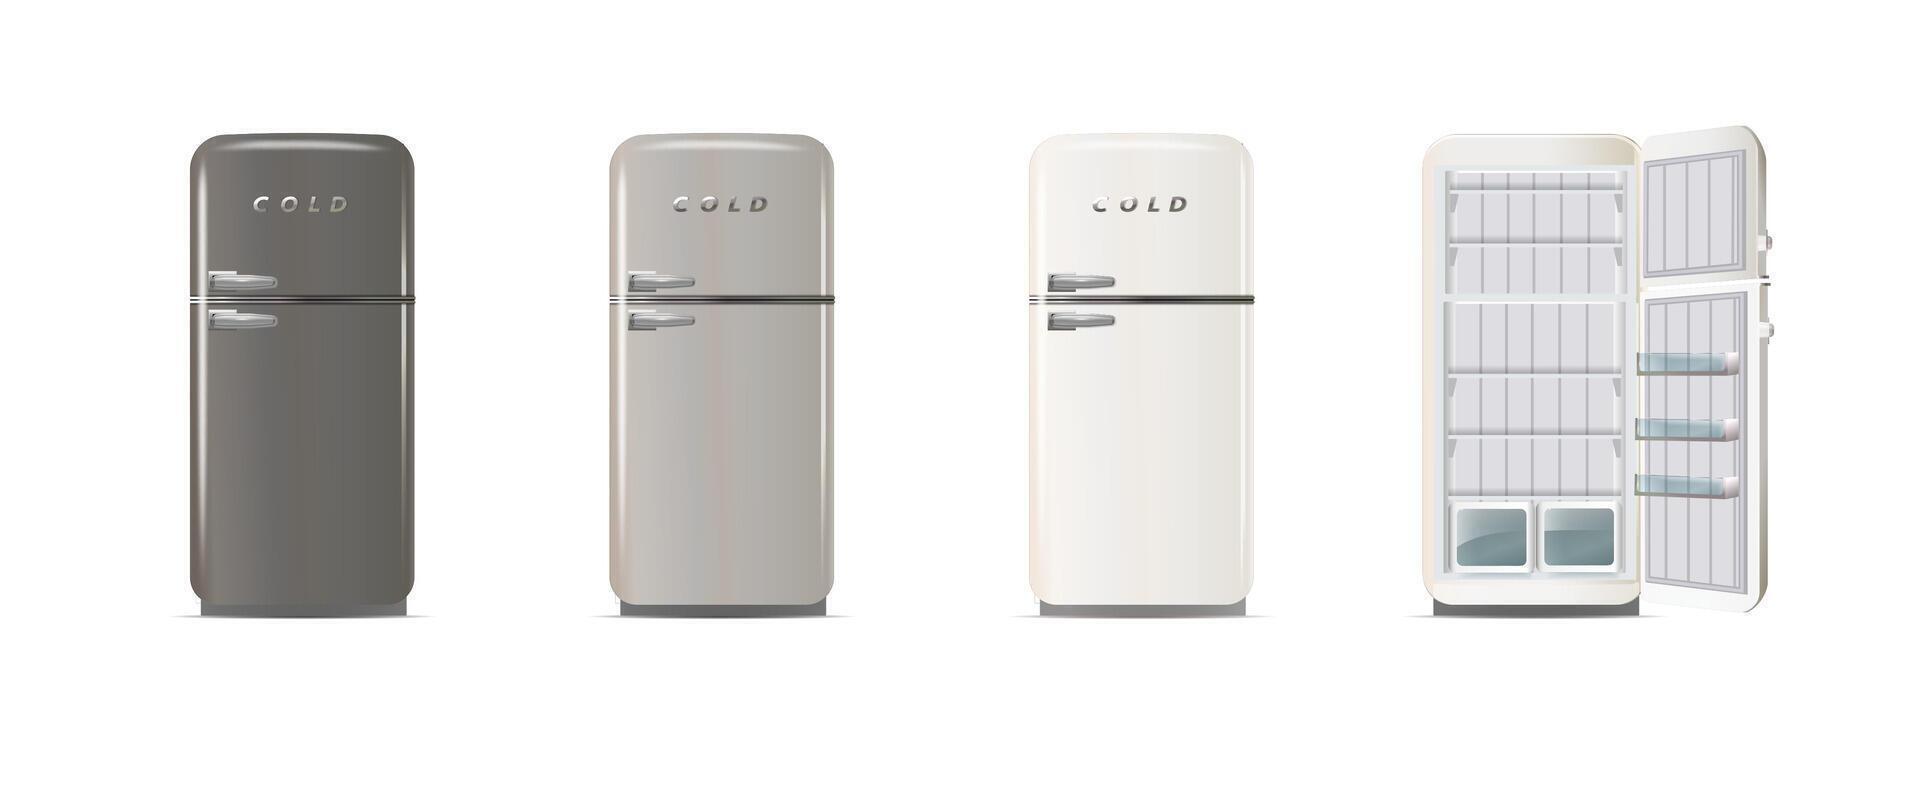 modern koelkasten. realistisch koelers, koelkasten vector